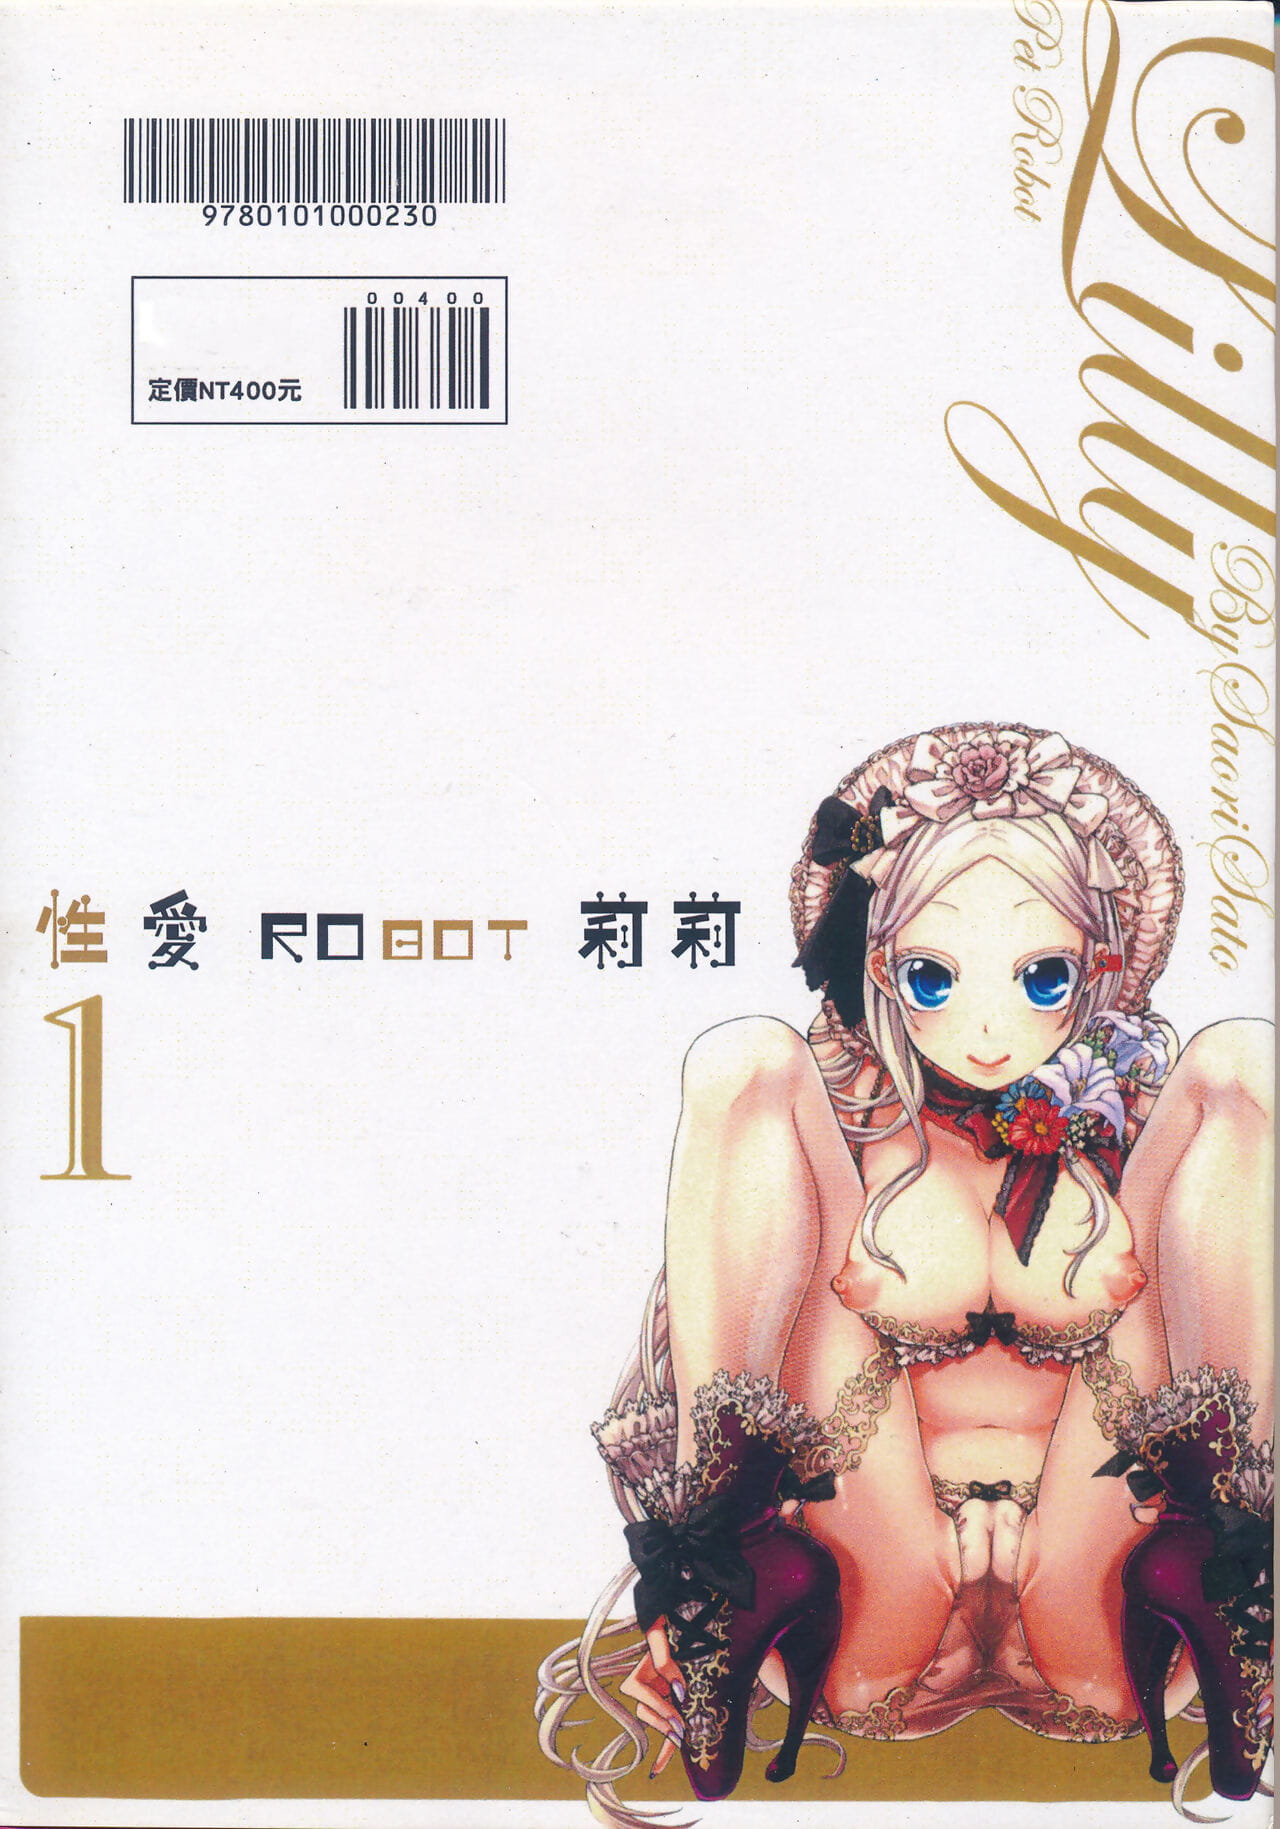 Satou Saori Aigan Robot Lilly - Pet Robot Lilly Vol. 1 - 性愛ROBOT 莉莉 Vol. 1 Chinese - part 7